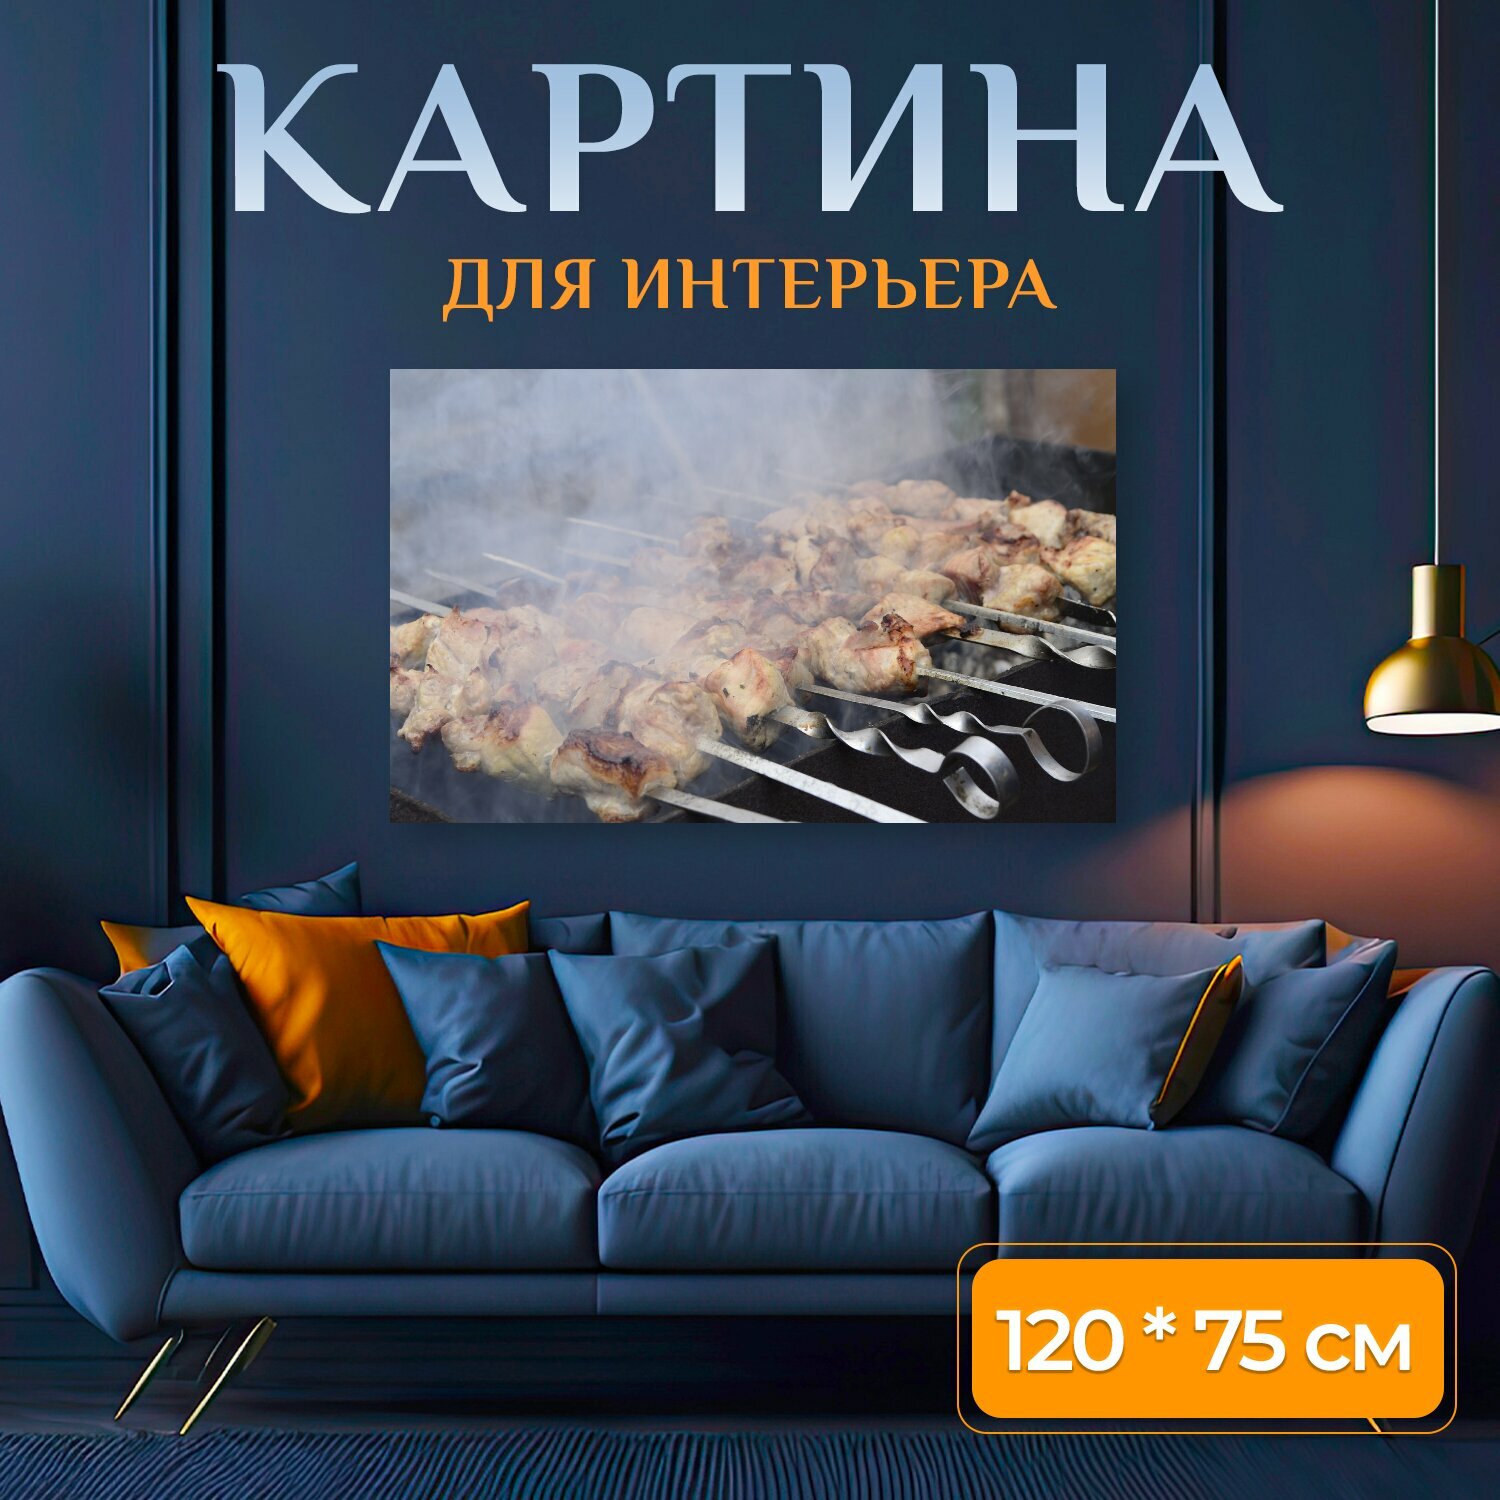 Картина на холсте "Шашлык, мангал, жареное мясо" на подрамнике 120х75 см. для интерьера